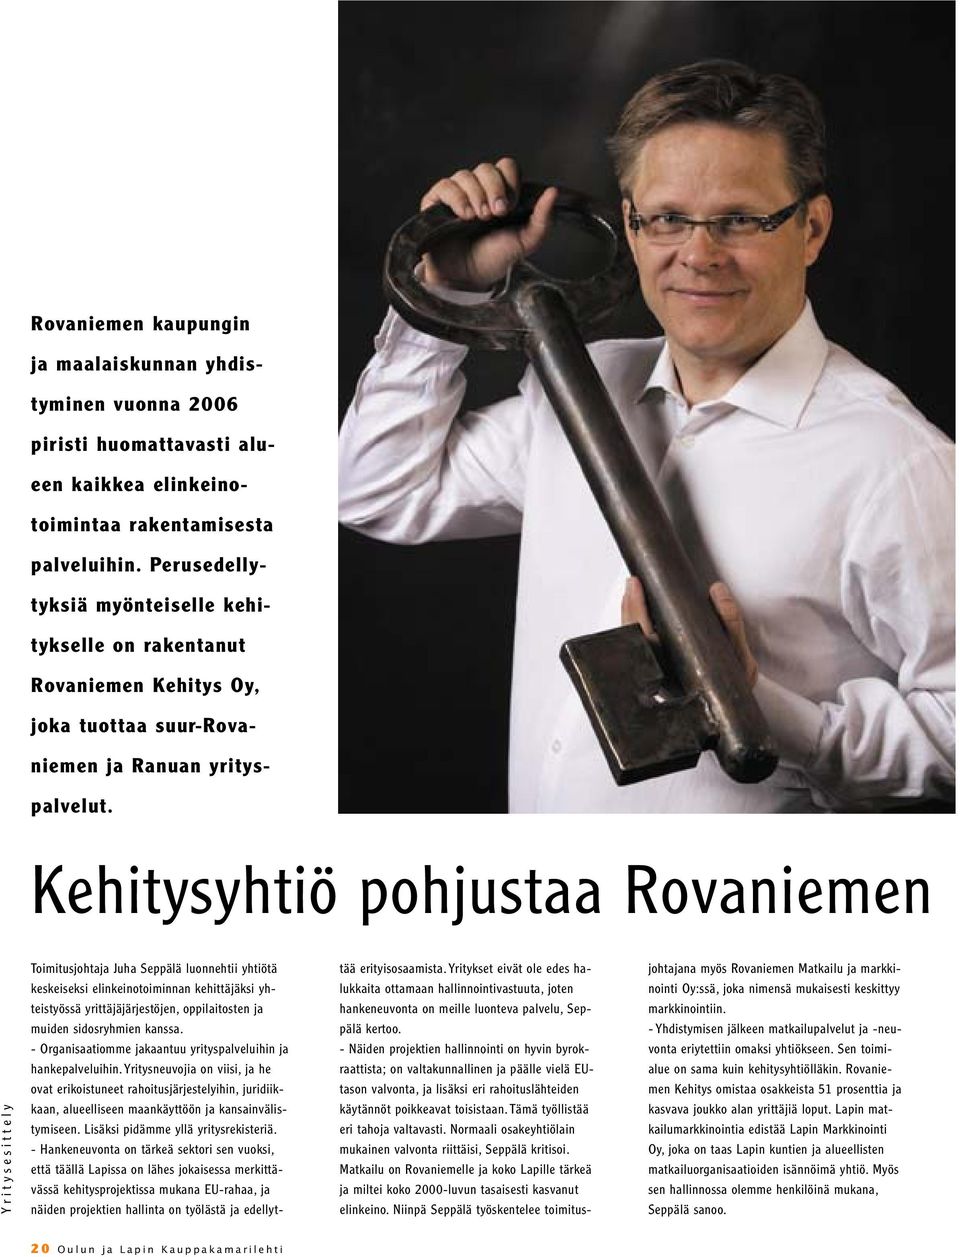 Kehitysyhtiö pohjustaa Rovaniemen Yritysesittely Toimitusjohtaja Juha Seppälä luonnehtii yhtiötä keskeiseksi elinkeinotoiminnan kehittäjäksi yhteistyössä yrittäjäjärjestöjen, oppilaitosten ja muiden